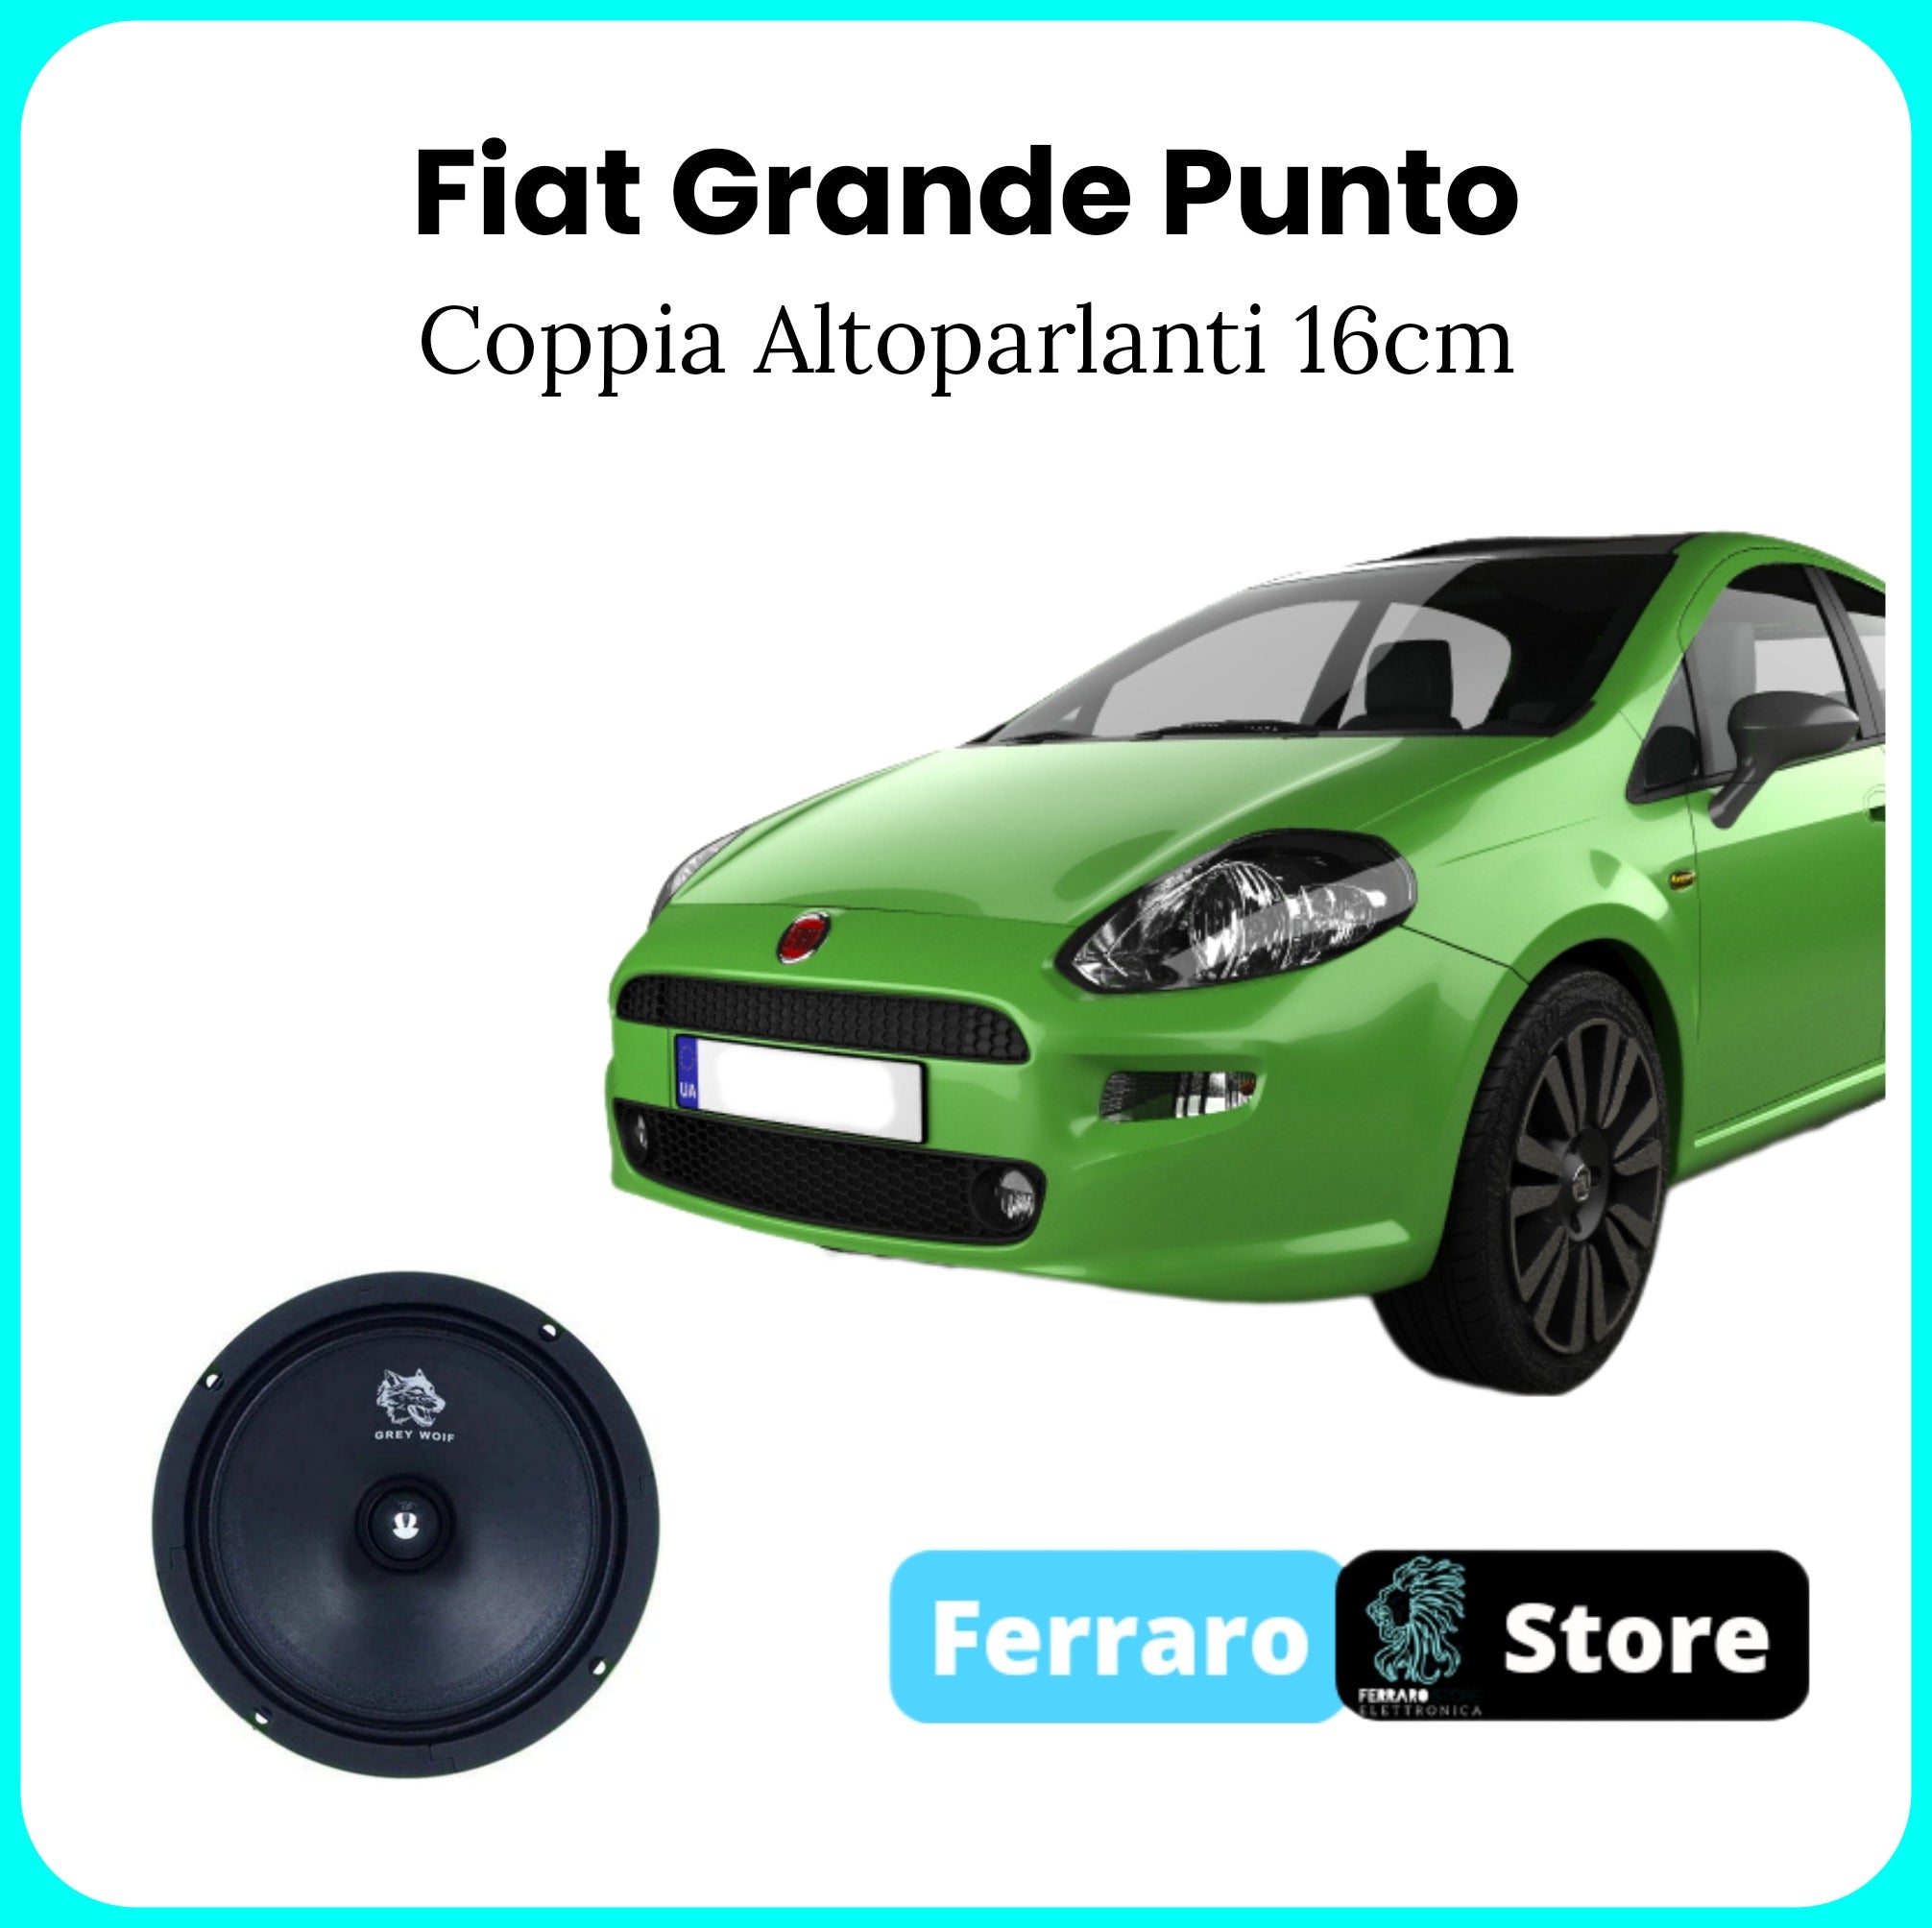 Coppia Altoparlanti per Fiat Grande Punto - 16cm, Altoparlanti 600w